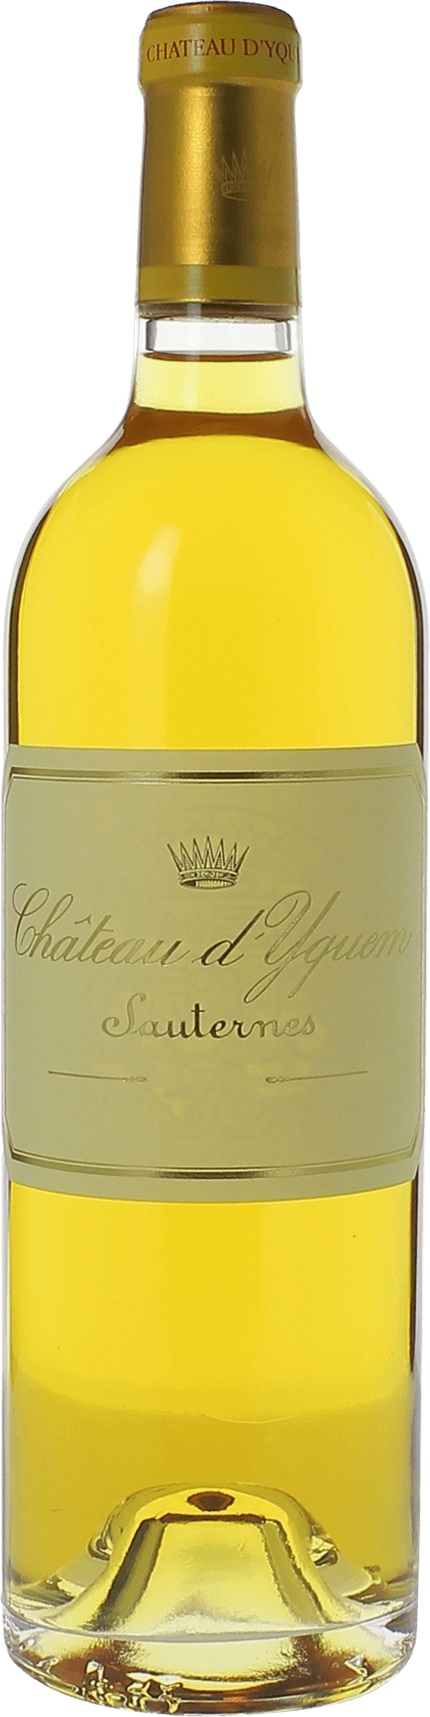 Yquem (disponible dbut fvrier) 1943 1er Grand cru class Sauternes, Bordeaux blanc